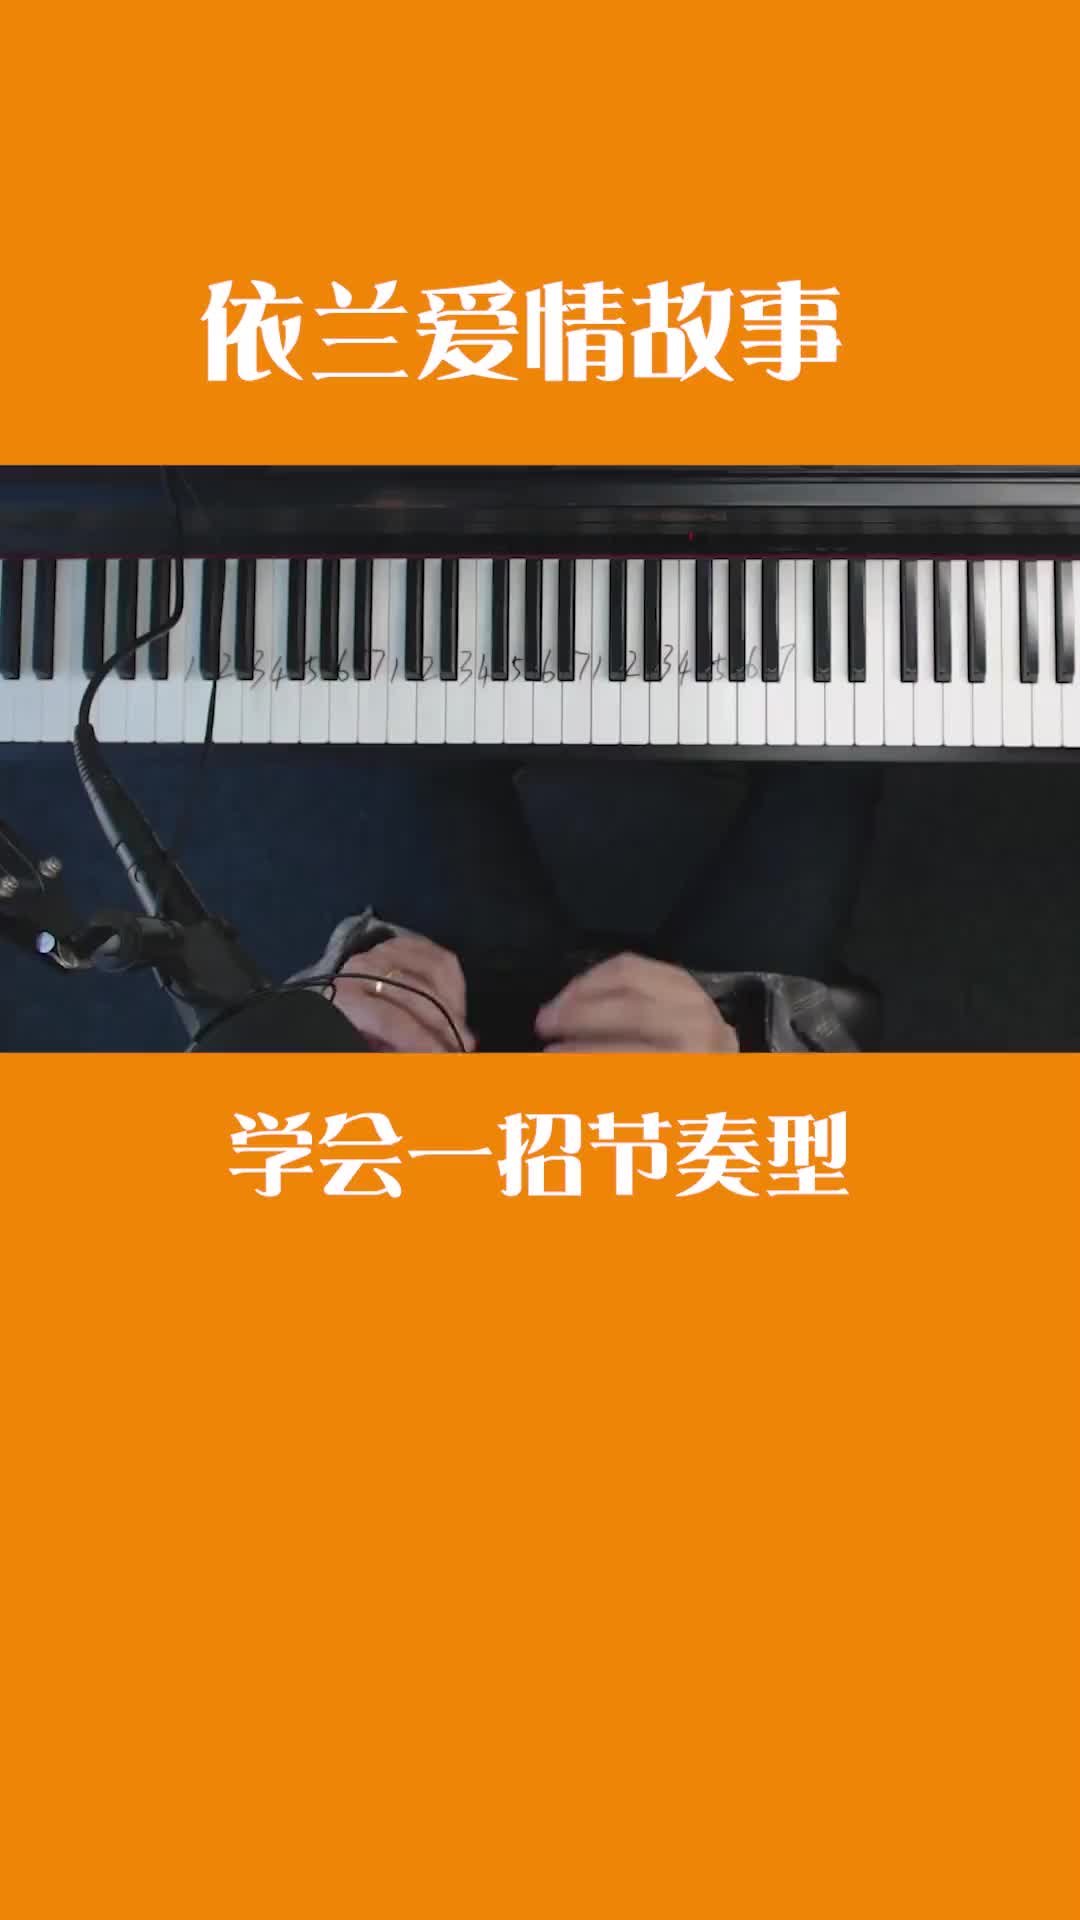 日语乐器手机游戏叫什么_日语的音乐游戏_日语乐器手机游戏